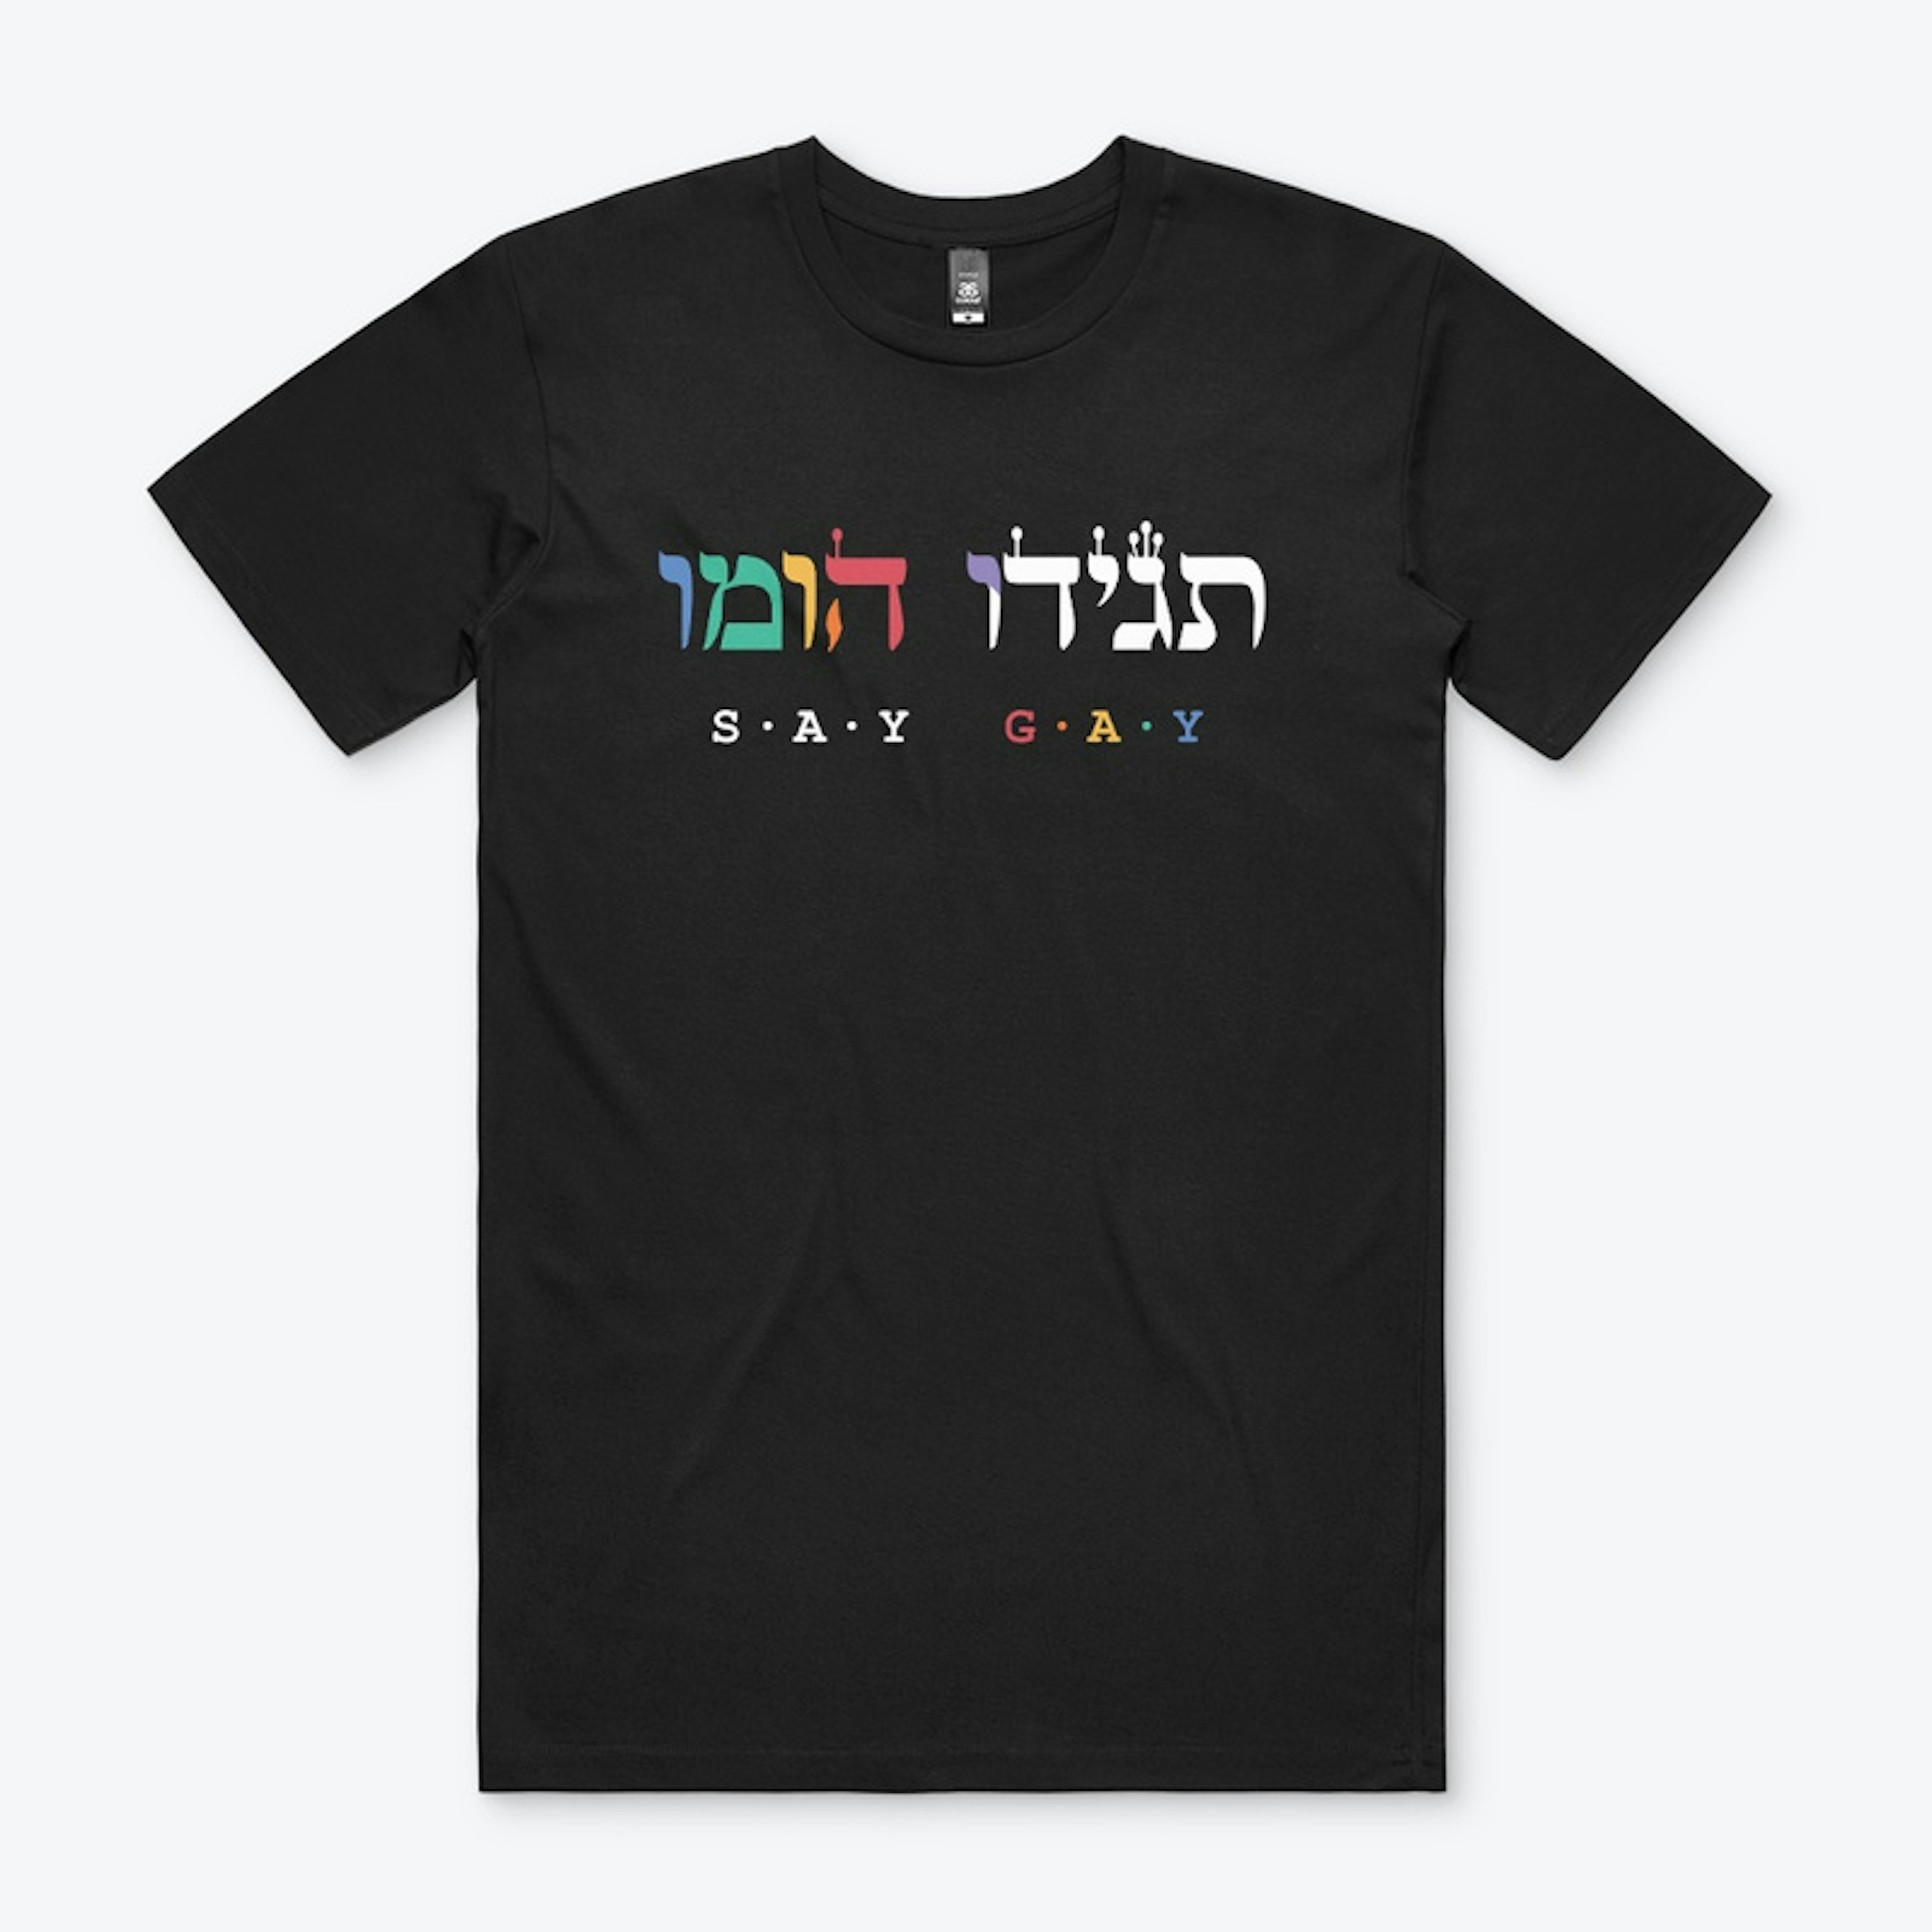 Say Gay - Hebrew